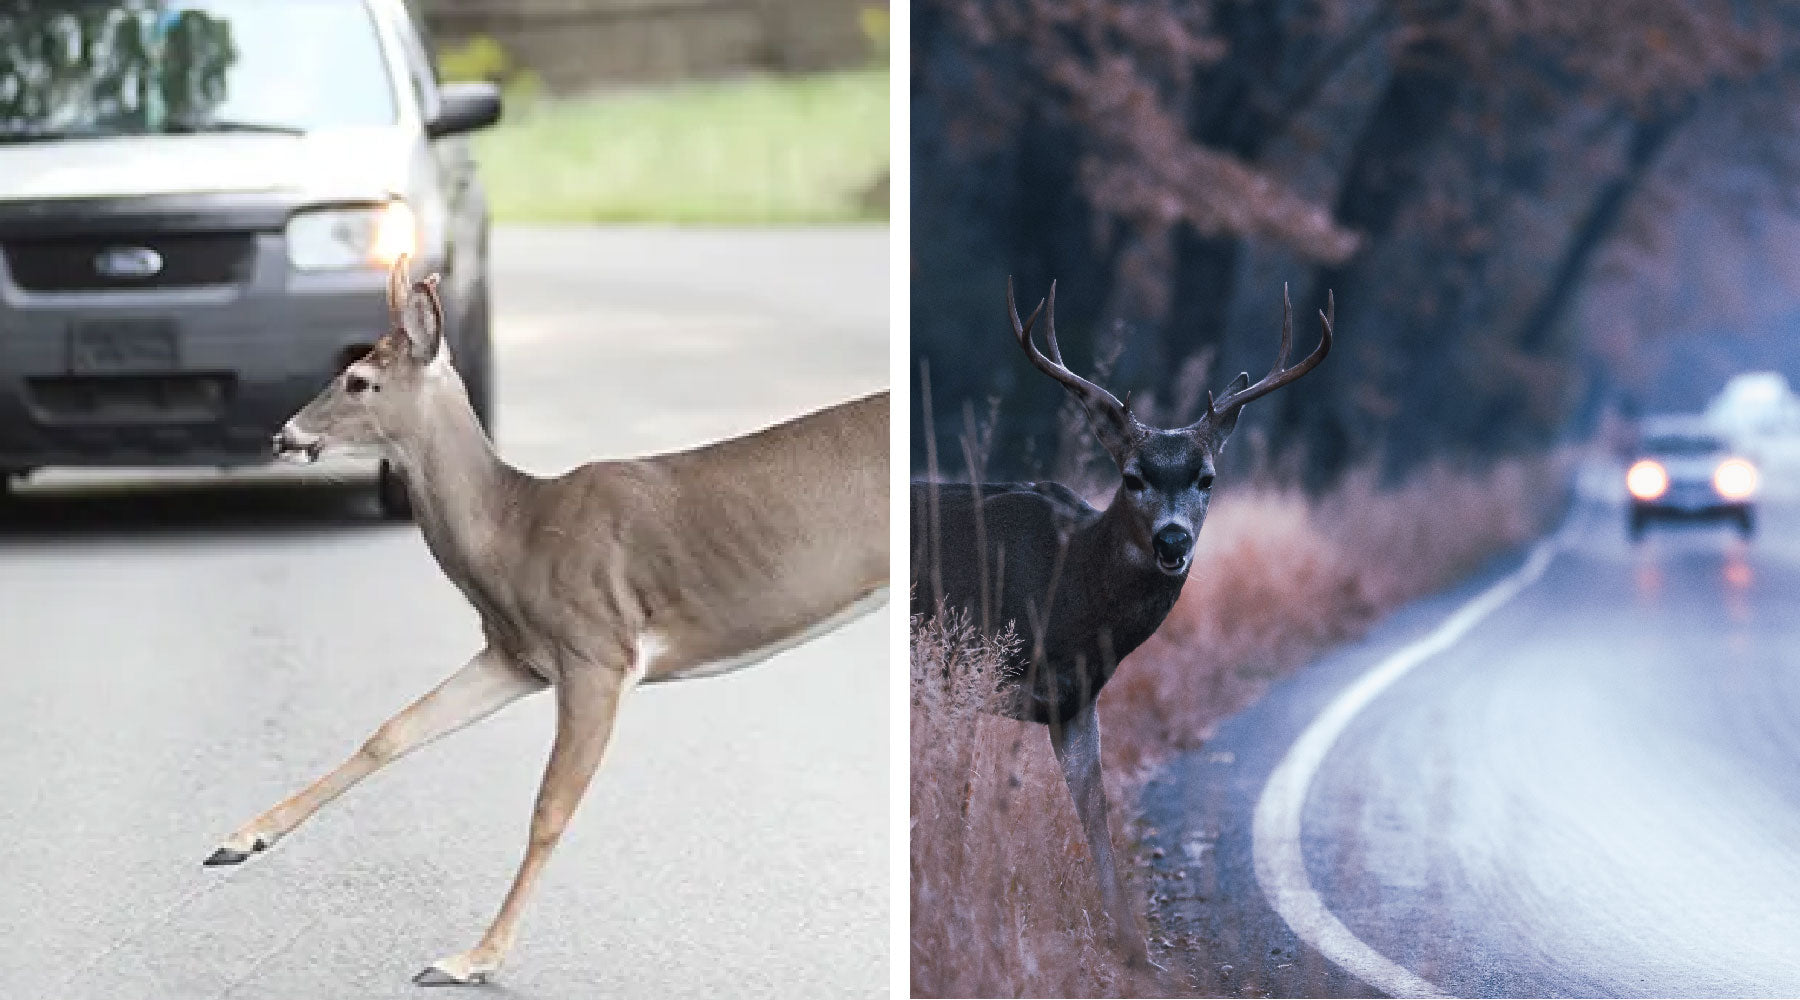 6pcs Deer Alert For Vehicles Avoids Deer Collisions Car Deer Warning Black  Ultrasonic Wildlife Warn